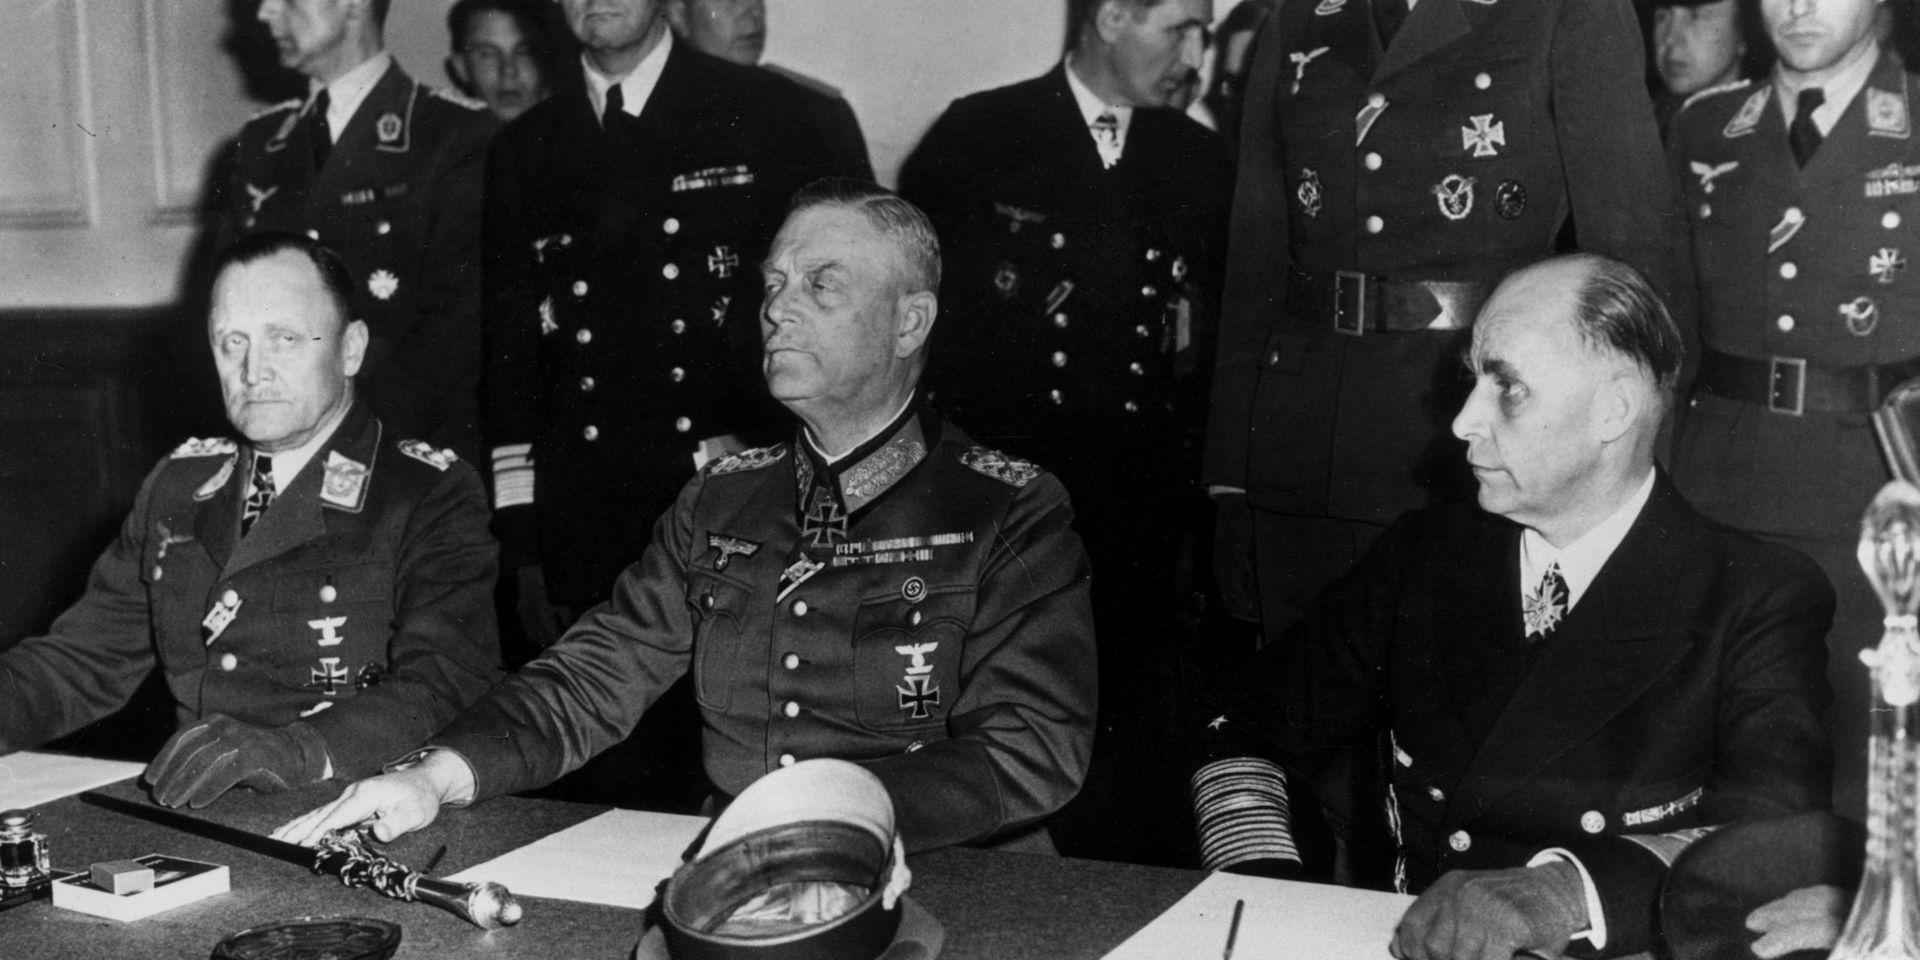 Undertecknande version två av den tyska kapitulationen, den 8 maj 1945 i Karlshorst i Berlins utkanter. Till vänster generalöverste Hans-Jürgen Stumpff, i mitten generalfältmarskalk Wilhelm Keitel och till höger generalamiral Hans-Georg von Friedeburg.